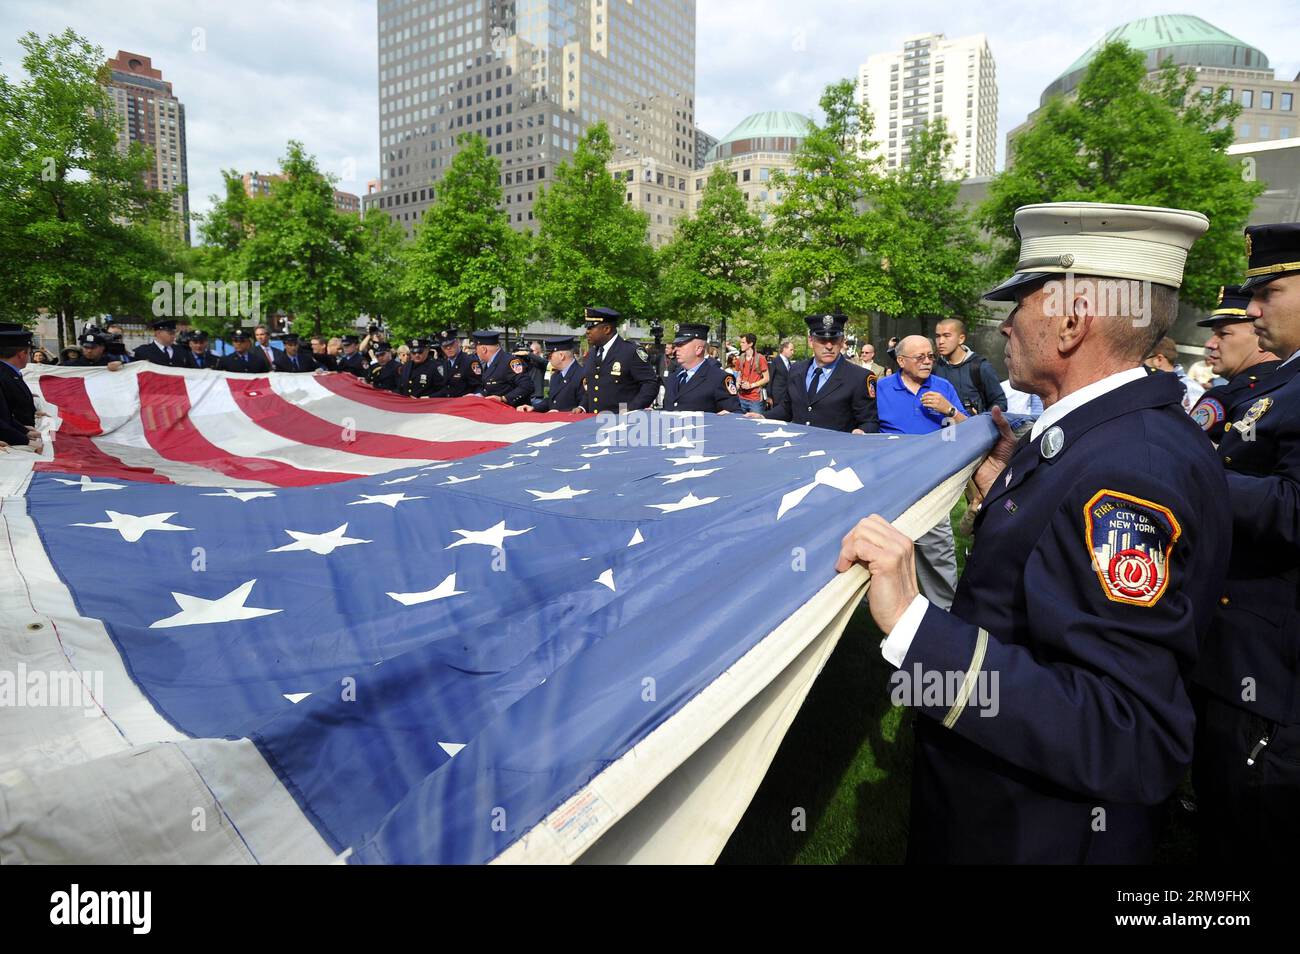 (140521) -- NEW YORK, 21 11 mai 2014 (Xinhua) -- les pompiers, la police et les militaires tiennent le drapeau national 9/11 devant le National September Memorial Museum à New York, États-Unis, le 21 mai 2014. Le musée commémoratif a ouvert ses portes au grand public mercredi après un transfert cérémoniel du drapeau national 9/11, un drapeau américain qui avait flotté au 90 West Street, adjacent à Ground Zero, pendant des semaines après les attaques, dans la collection permanente du musée. (Xinhua/Wang Lei) US-NEW YORK-SEPT. 11 MEMORIAL MUSEUM-OUVERTURE AU PUBLIC PUBLICATIONxNOTxINxCHN New York mai 21 Banque D'Images